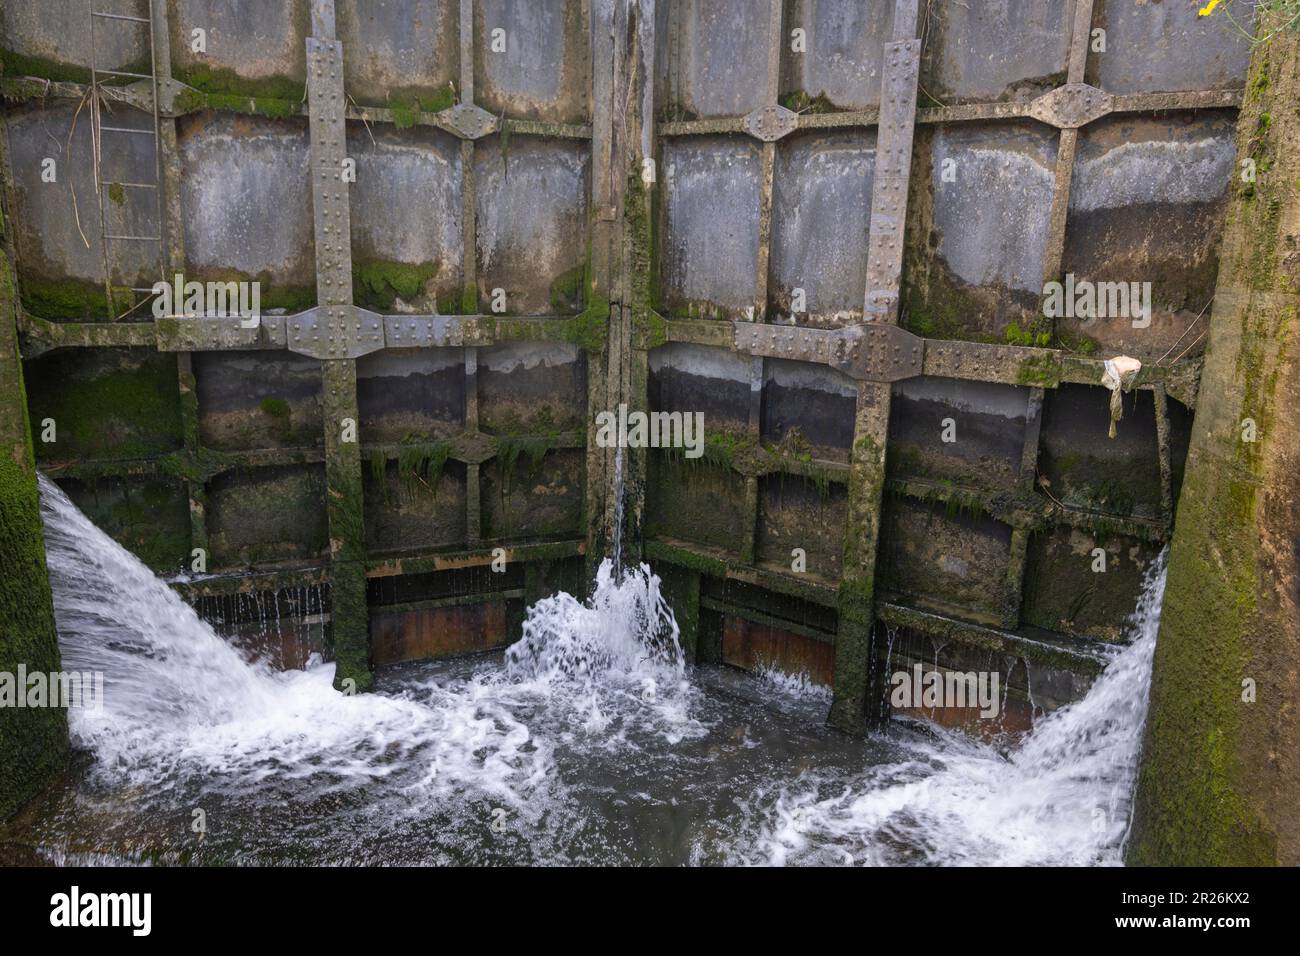 Chiudere le porte a Canal du Midi, Francia Foto Stock